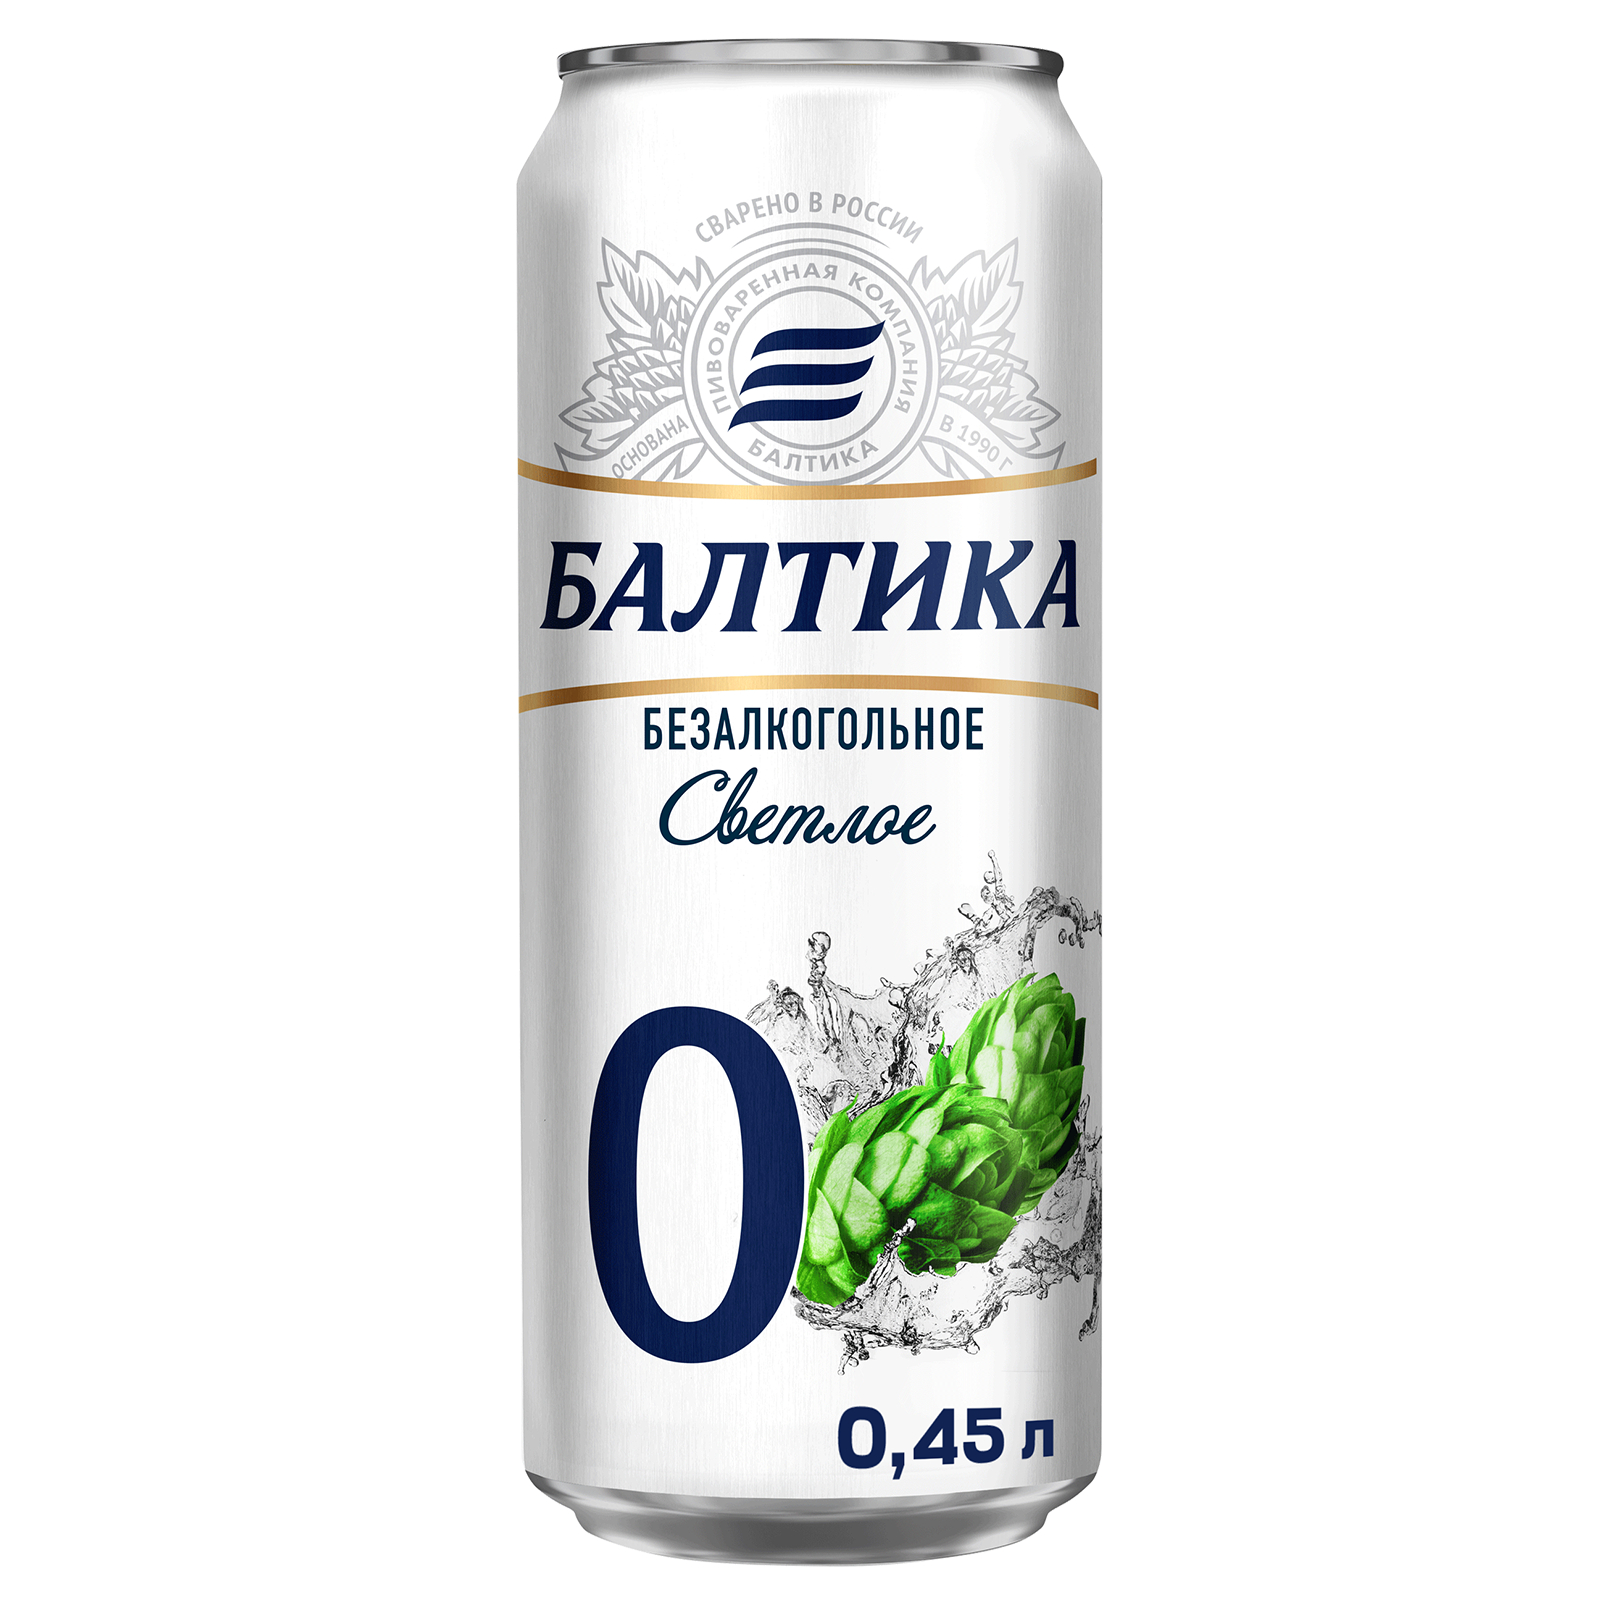 Пиво Балтика №0 Светлое безалкогольное 0,45 л, банка